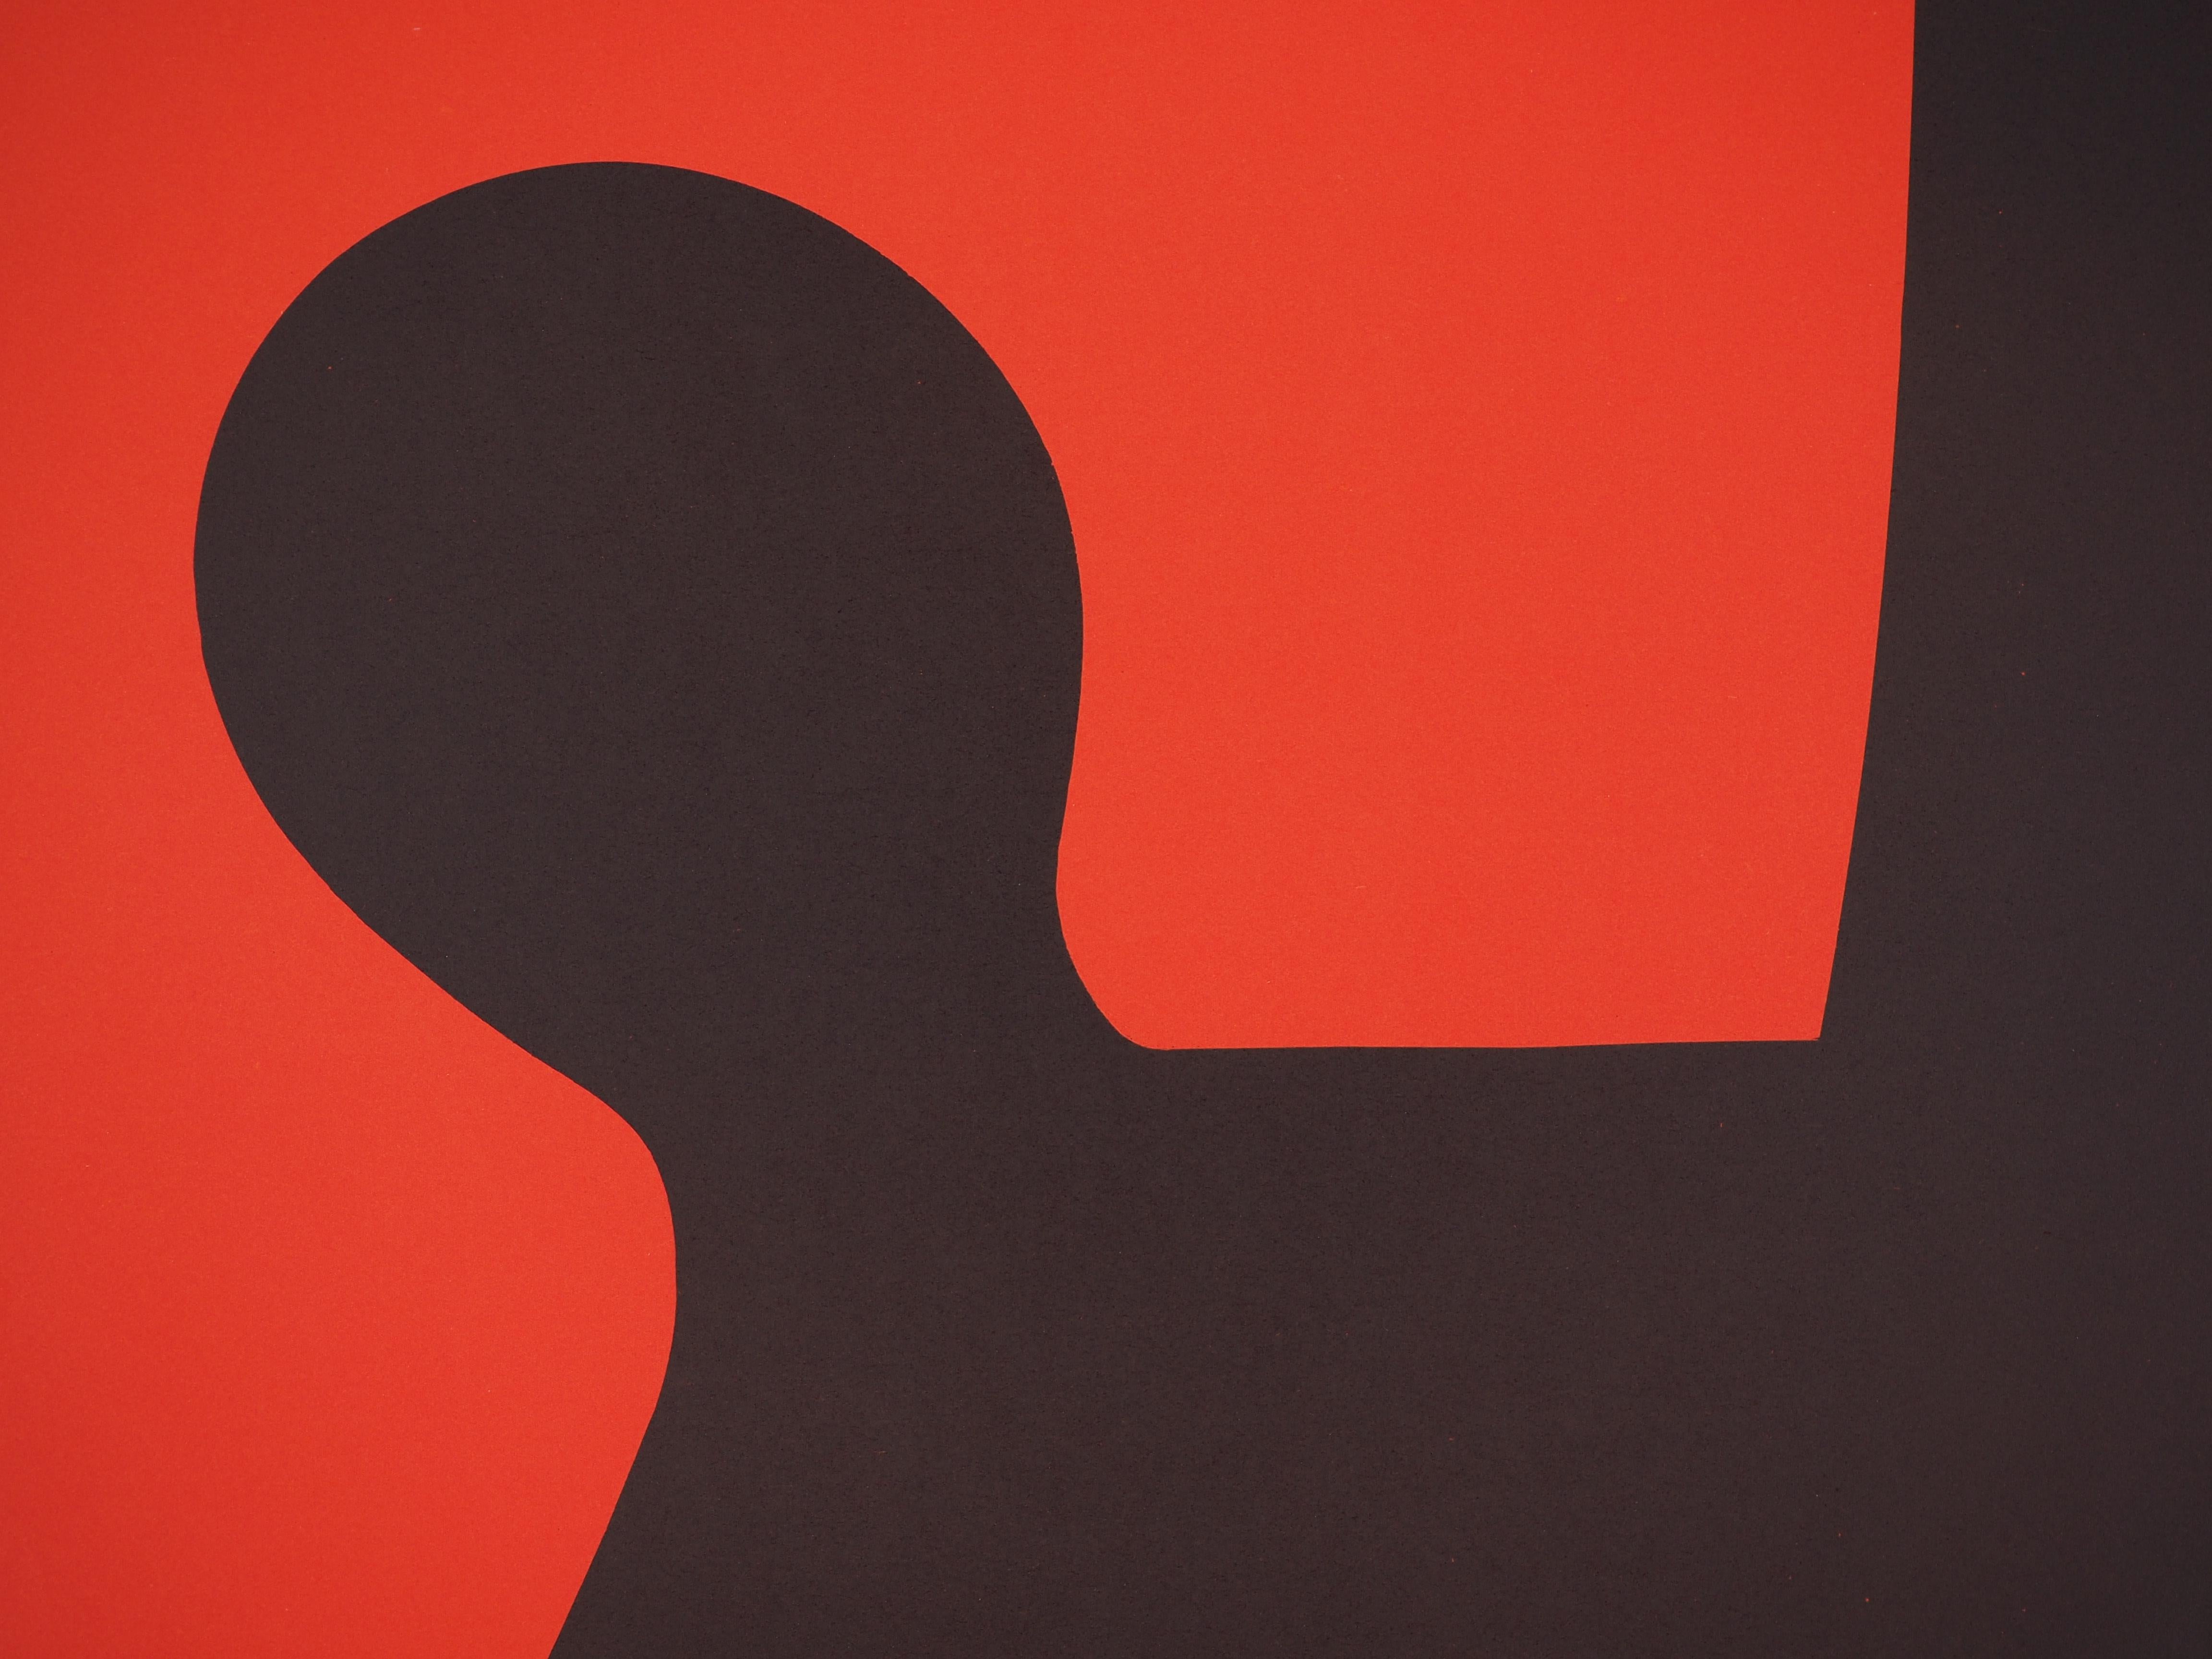 Noir ombre (Stabiles sculptures) - Affiche lithographique - Maeght 1969 - Print de (after) Alexander Calder